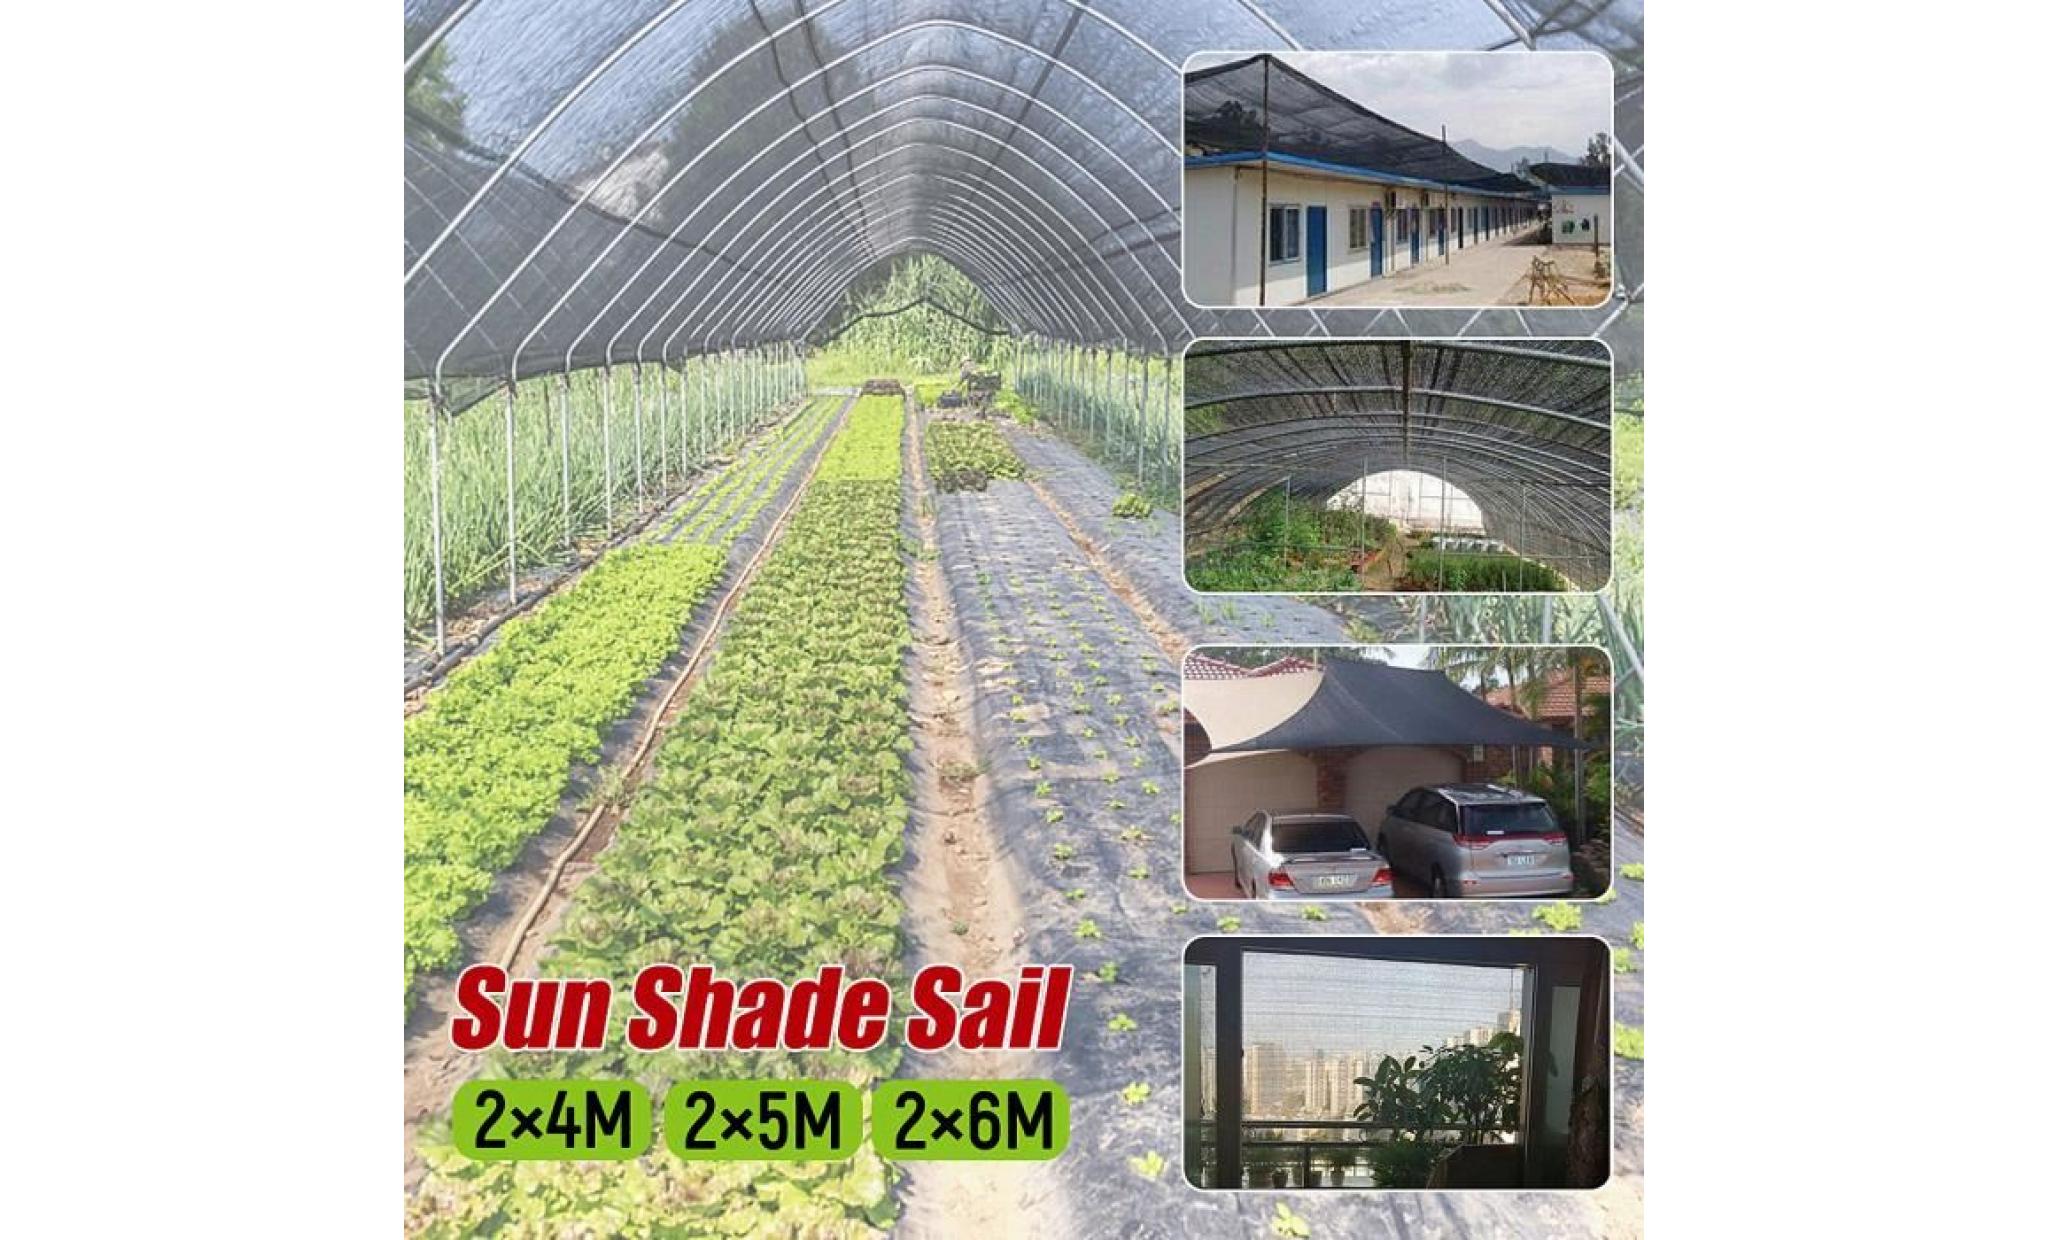 neufu voile d'ombrage protection anti uv solaire toile tendue parasol jardin serre 2x5m pas cher